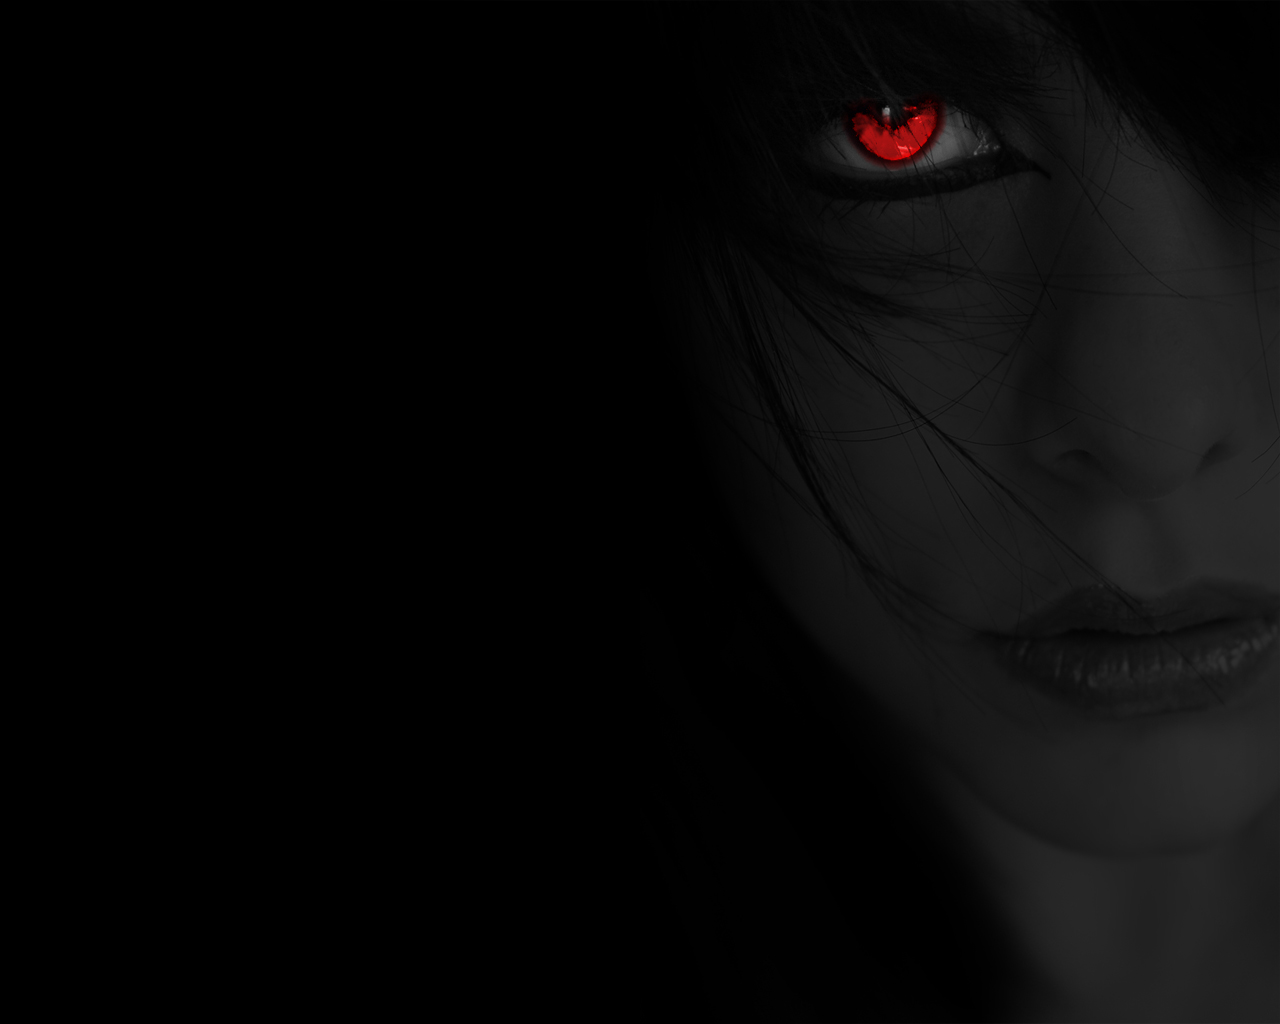 gothic, creepy, women, black, eye, red eyes